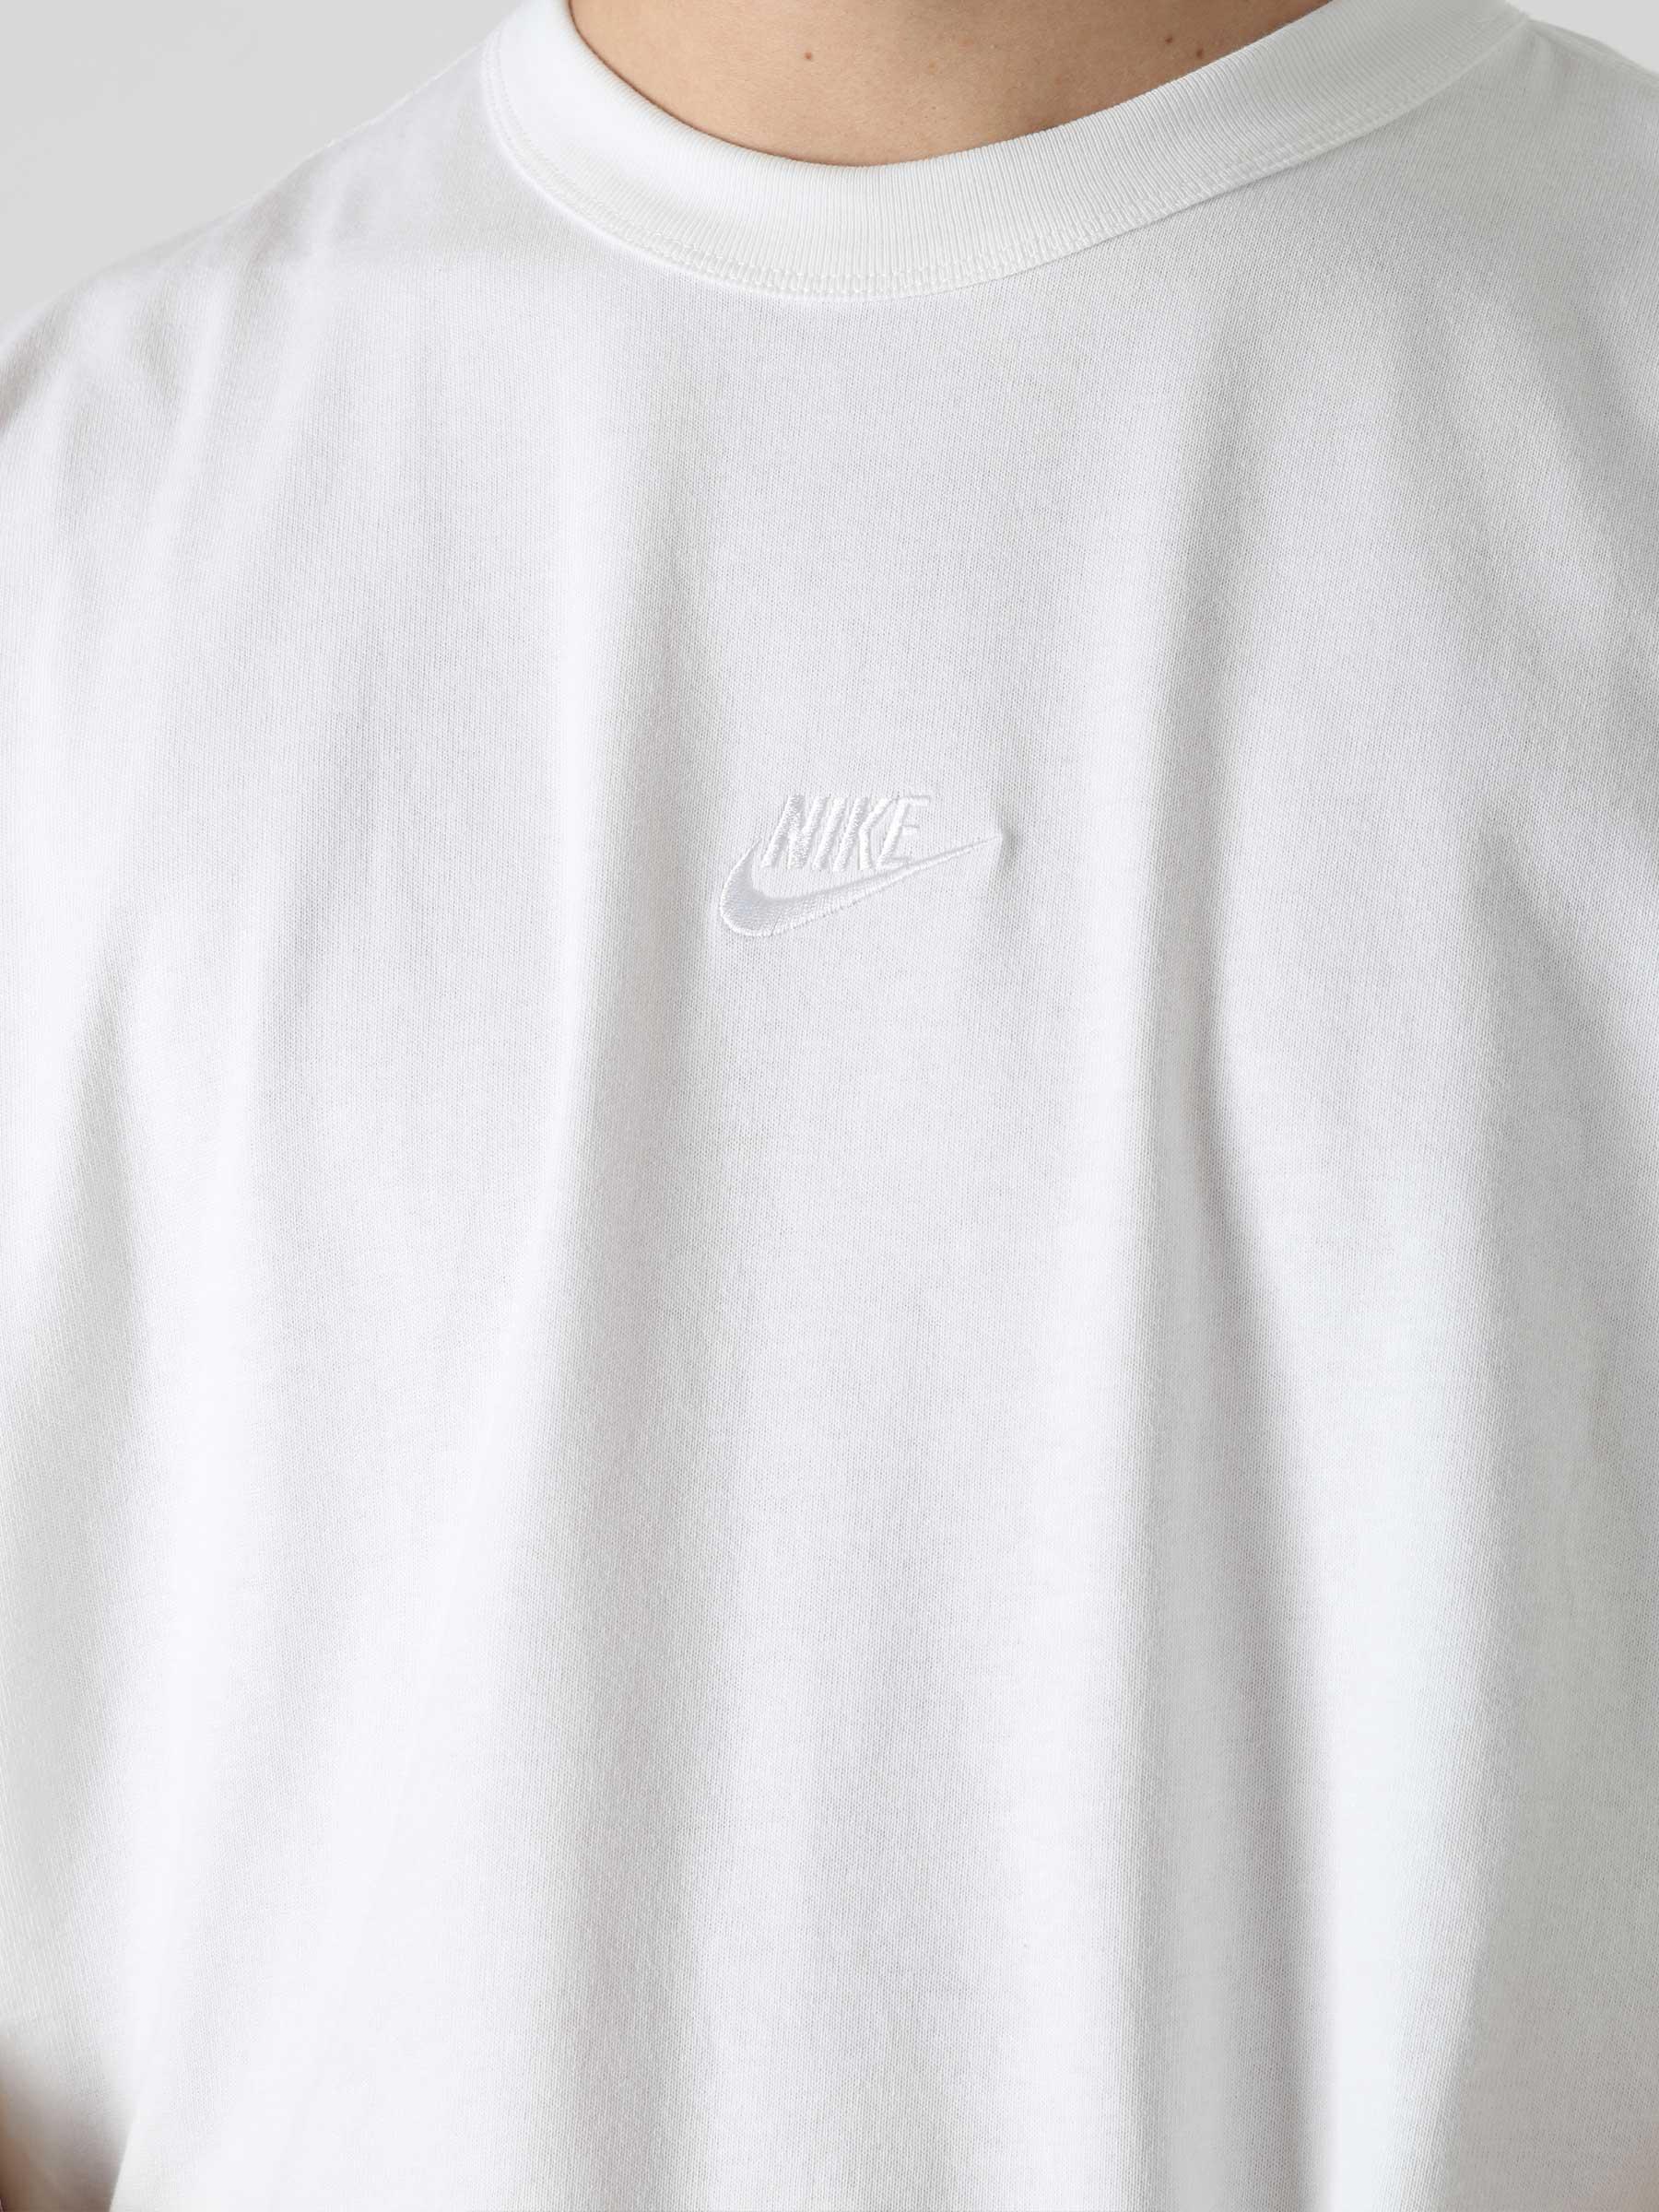 Nike NSW T-Shirt Premium Essential White White - Freshcotton